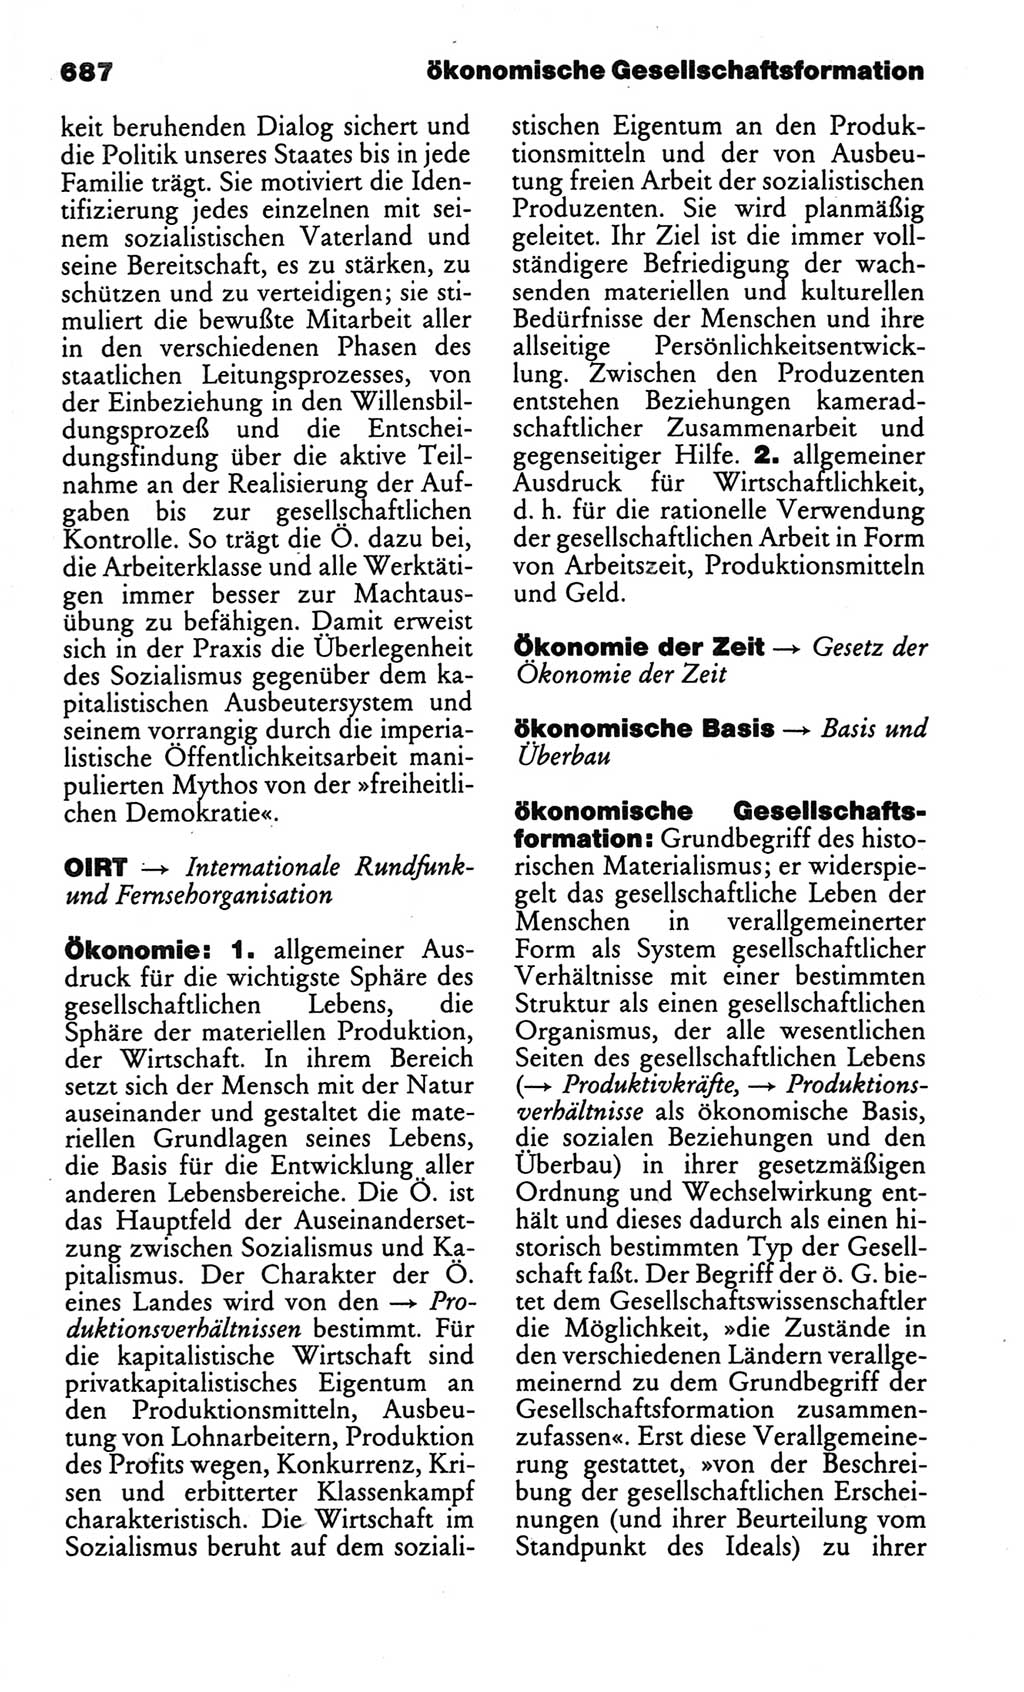 Kleines politisches Wörterbuch [Deutsche Demokratische Republik (DDR)] 1986, Seite 687 (Kl. pol. Wb. DDR 1986, S. 687)